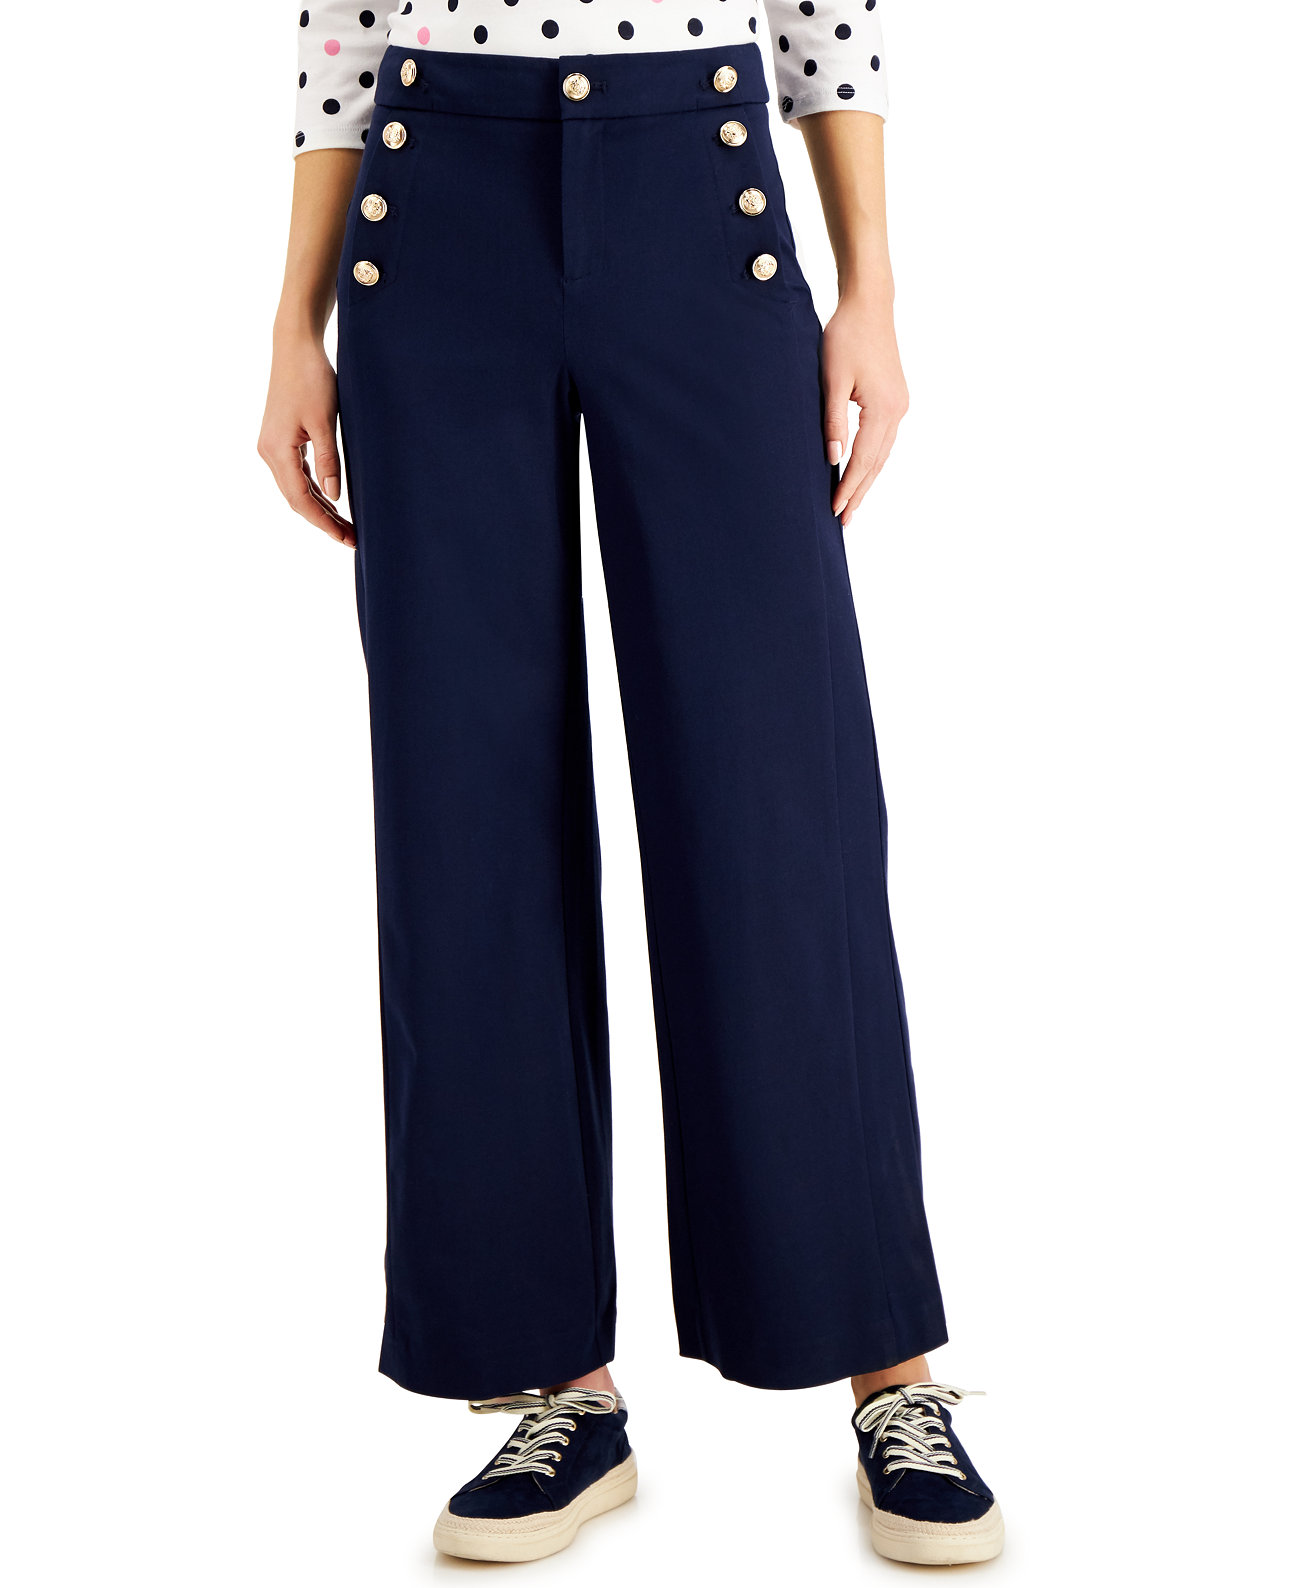 Миниатюрные широкие матросские брюки, созданные для Macy's Charter Club